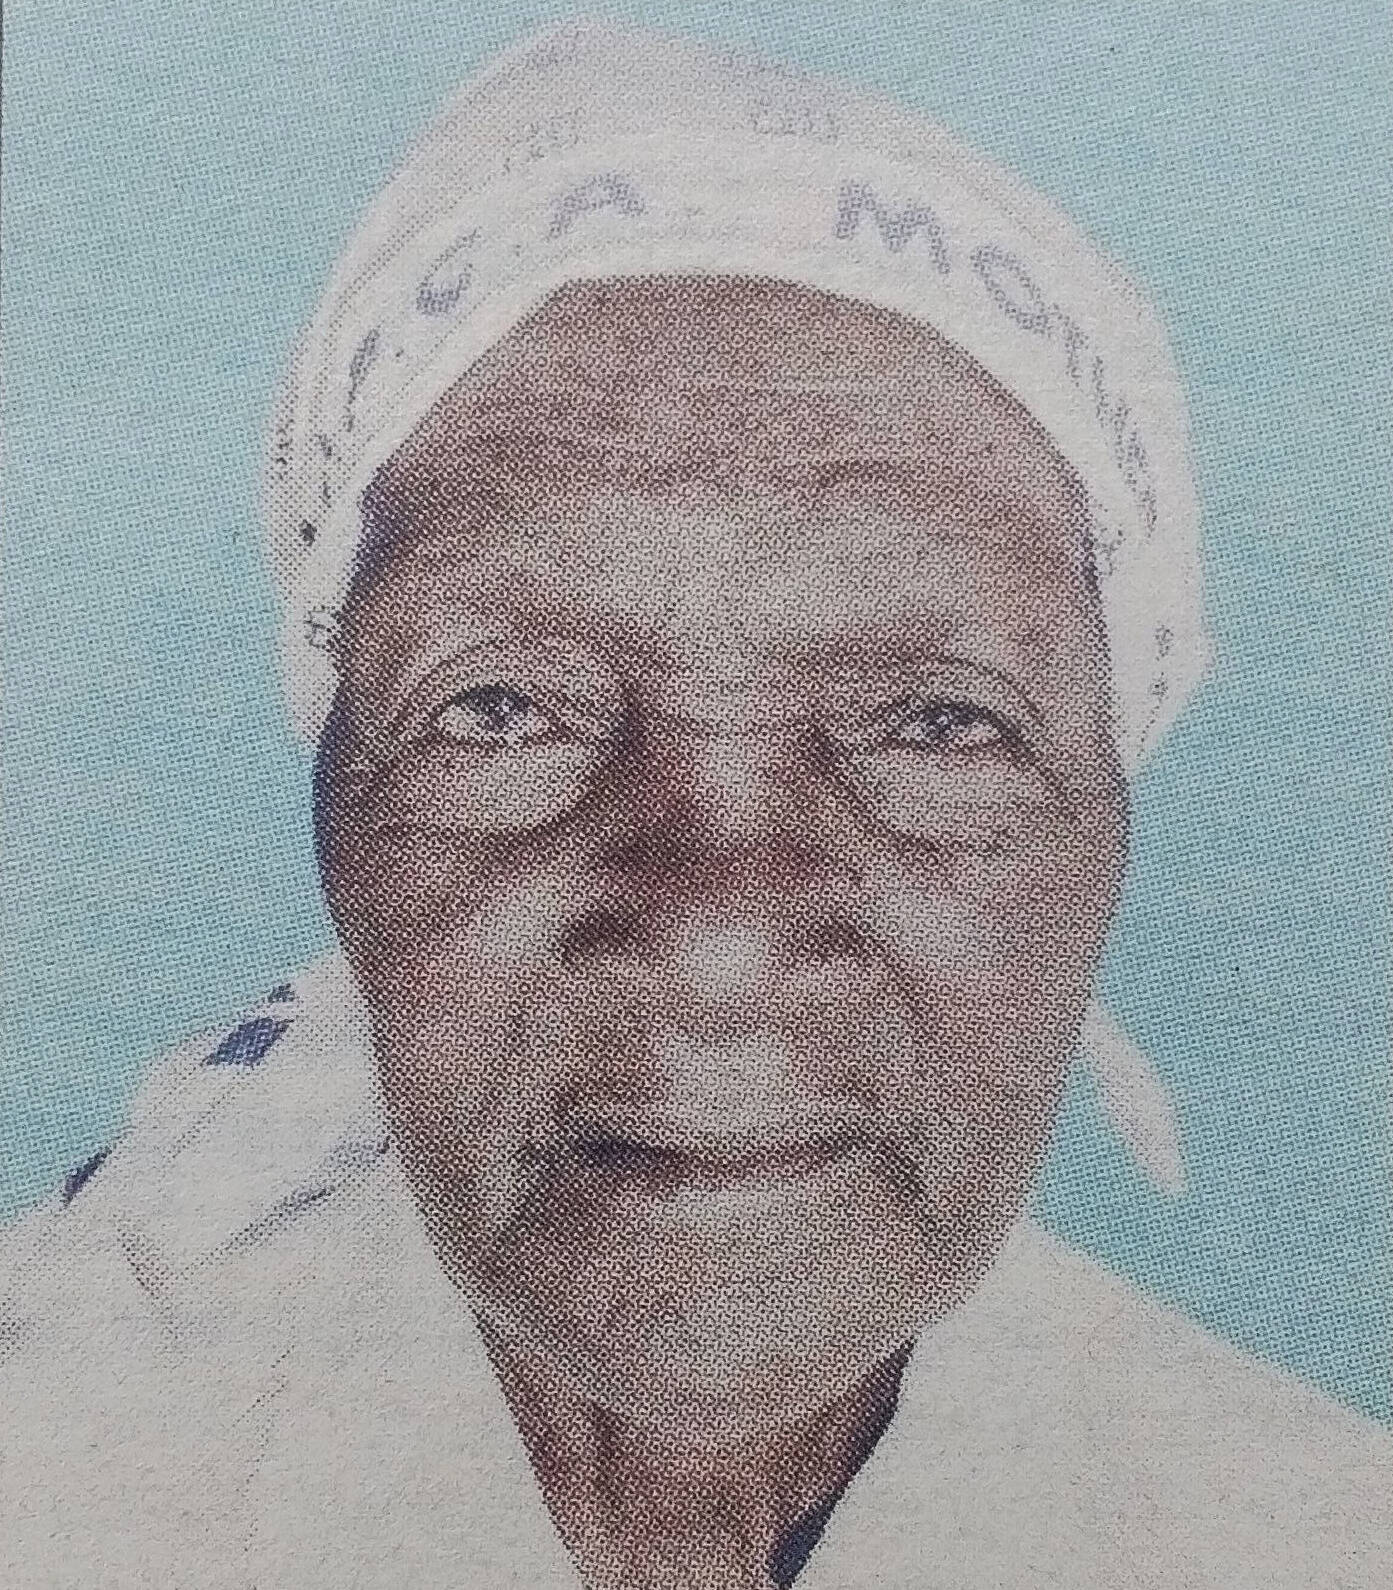 Obituary Image of Sofia Nyaguthii Githinji (Nyina Wa Njagi) Sunrise: 1925 - Sunset: 15/4/2017